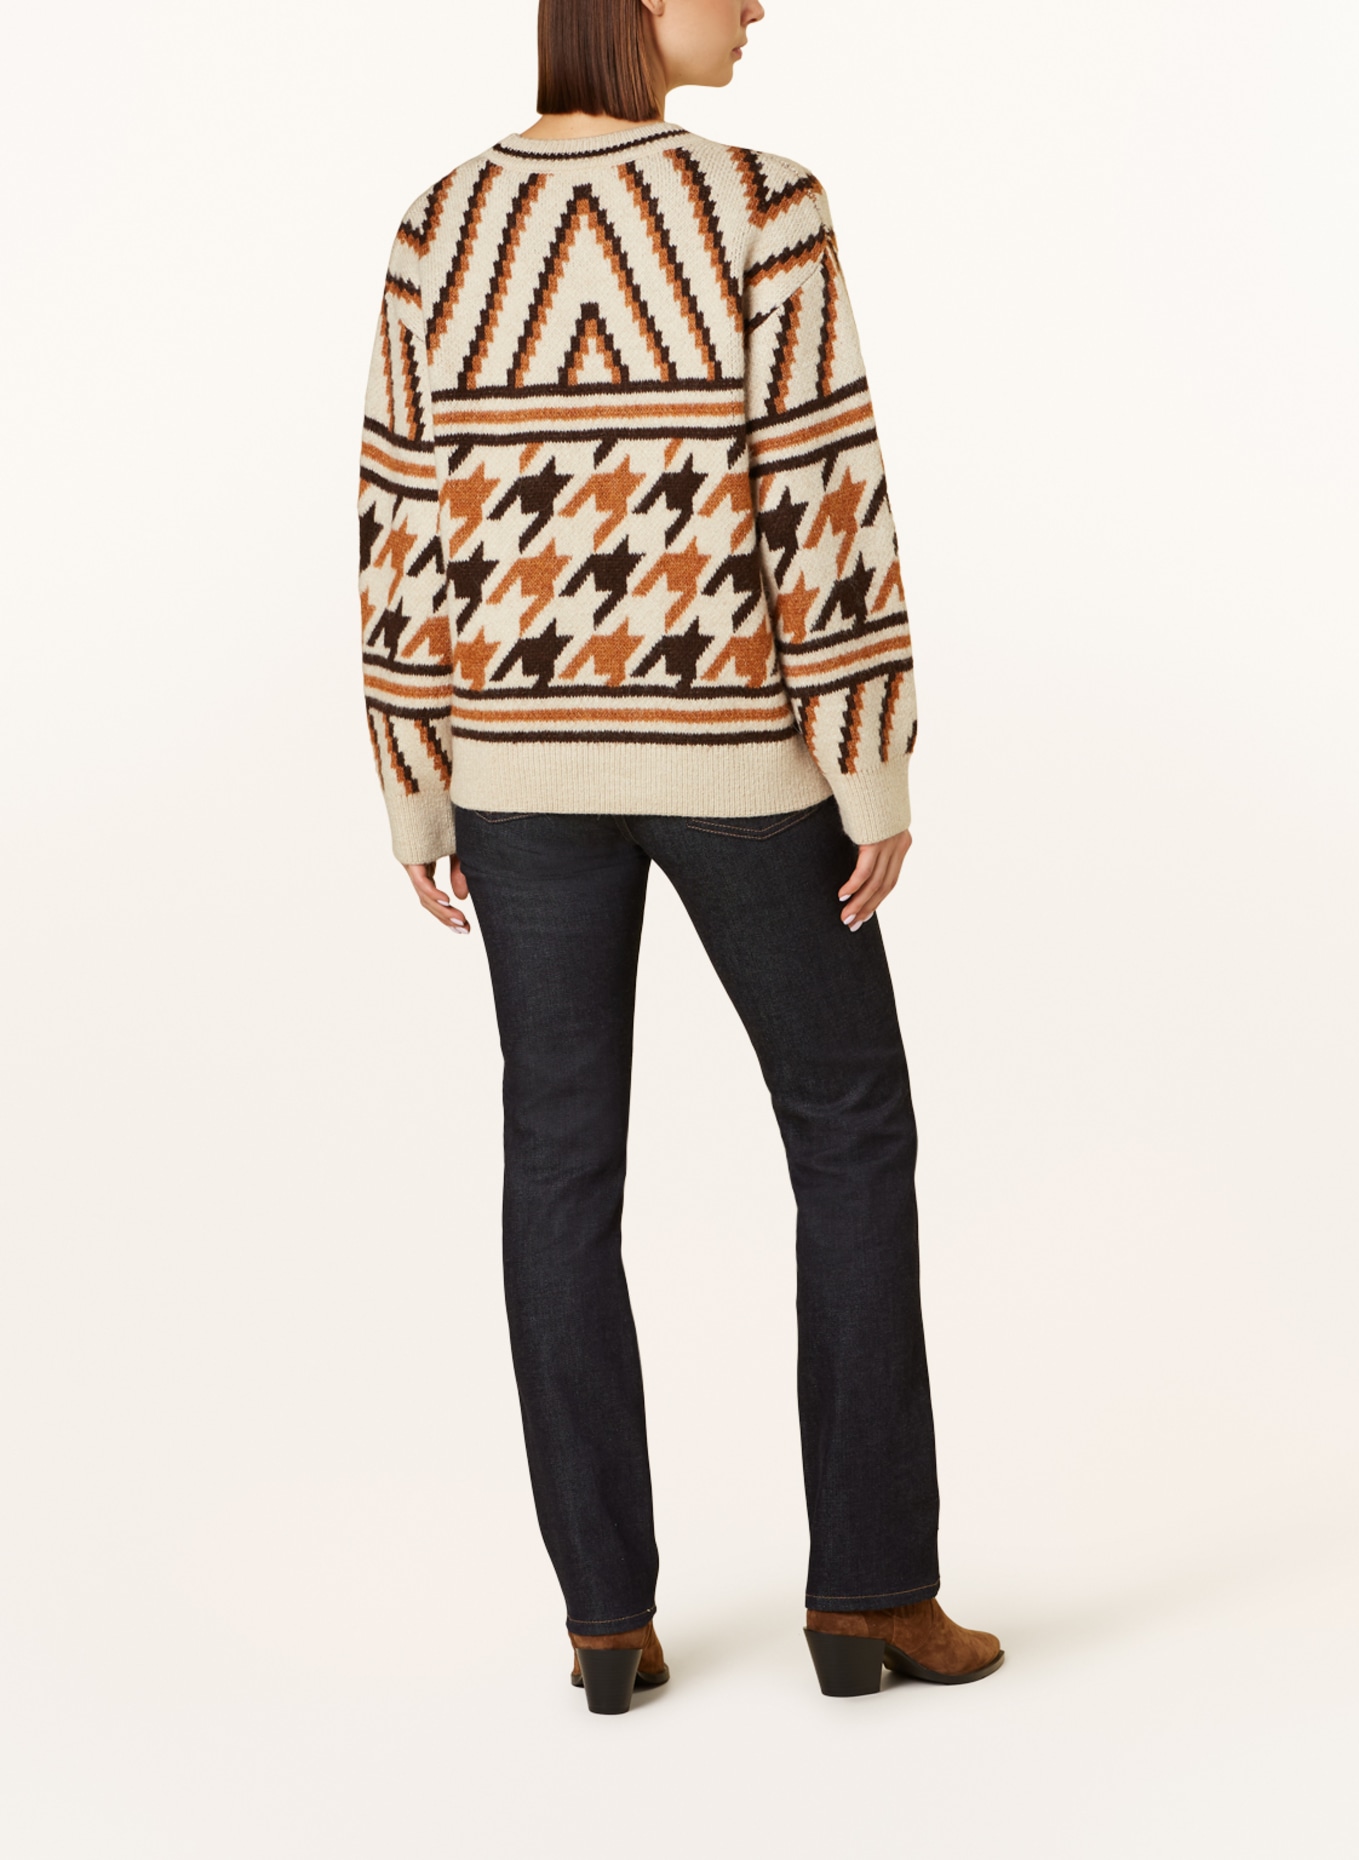 DEANNA brown Jeans dark cognac/ Pepe ecru/ in Sweater